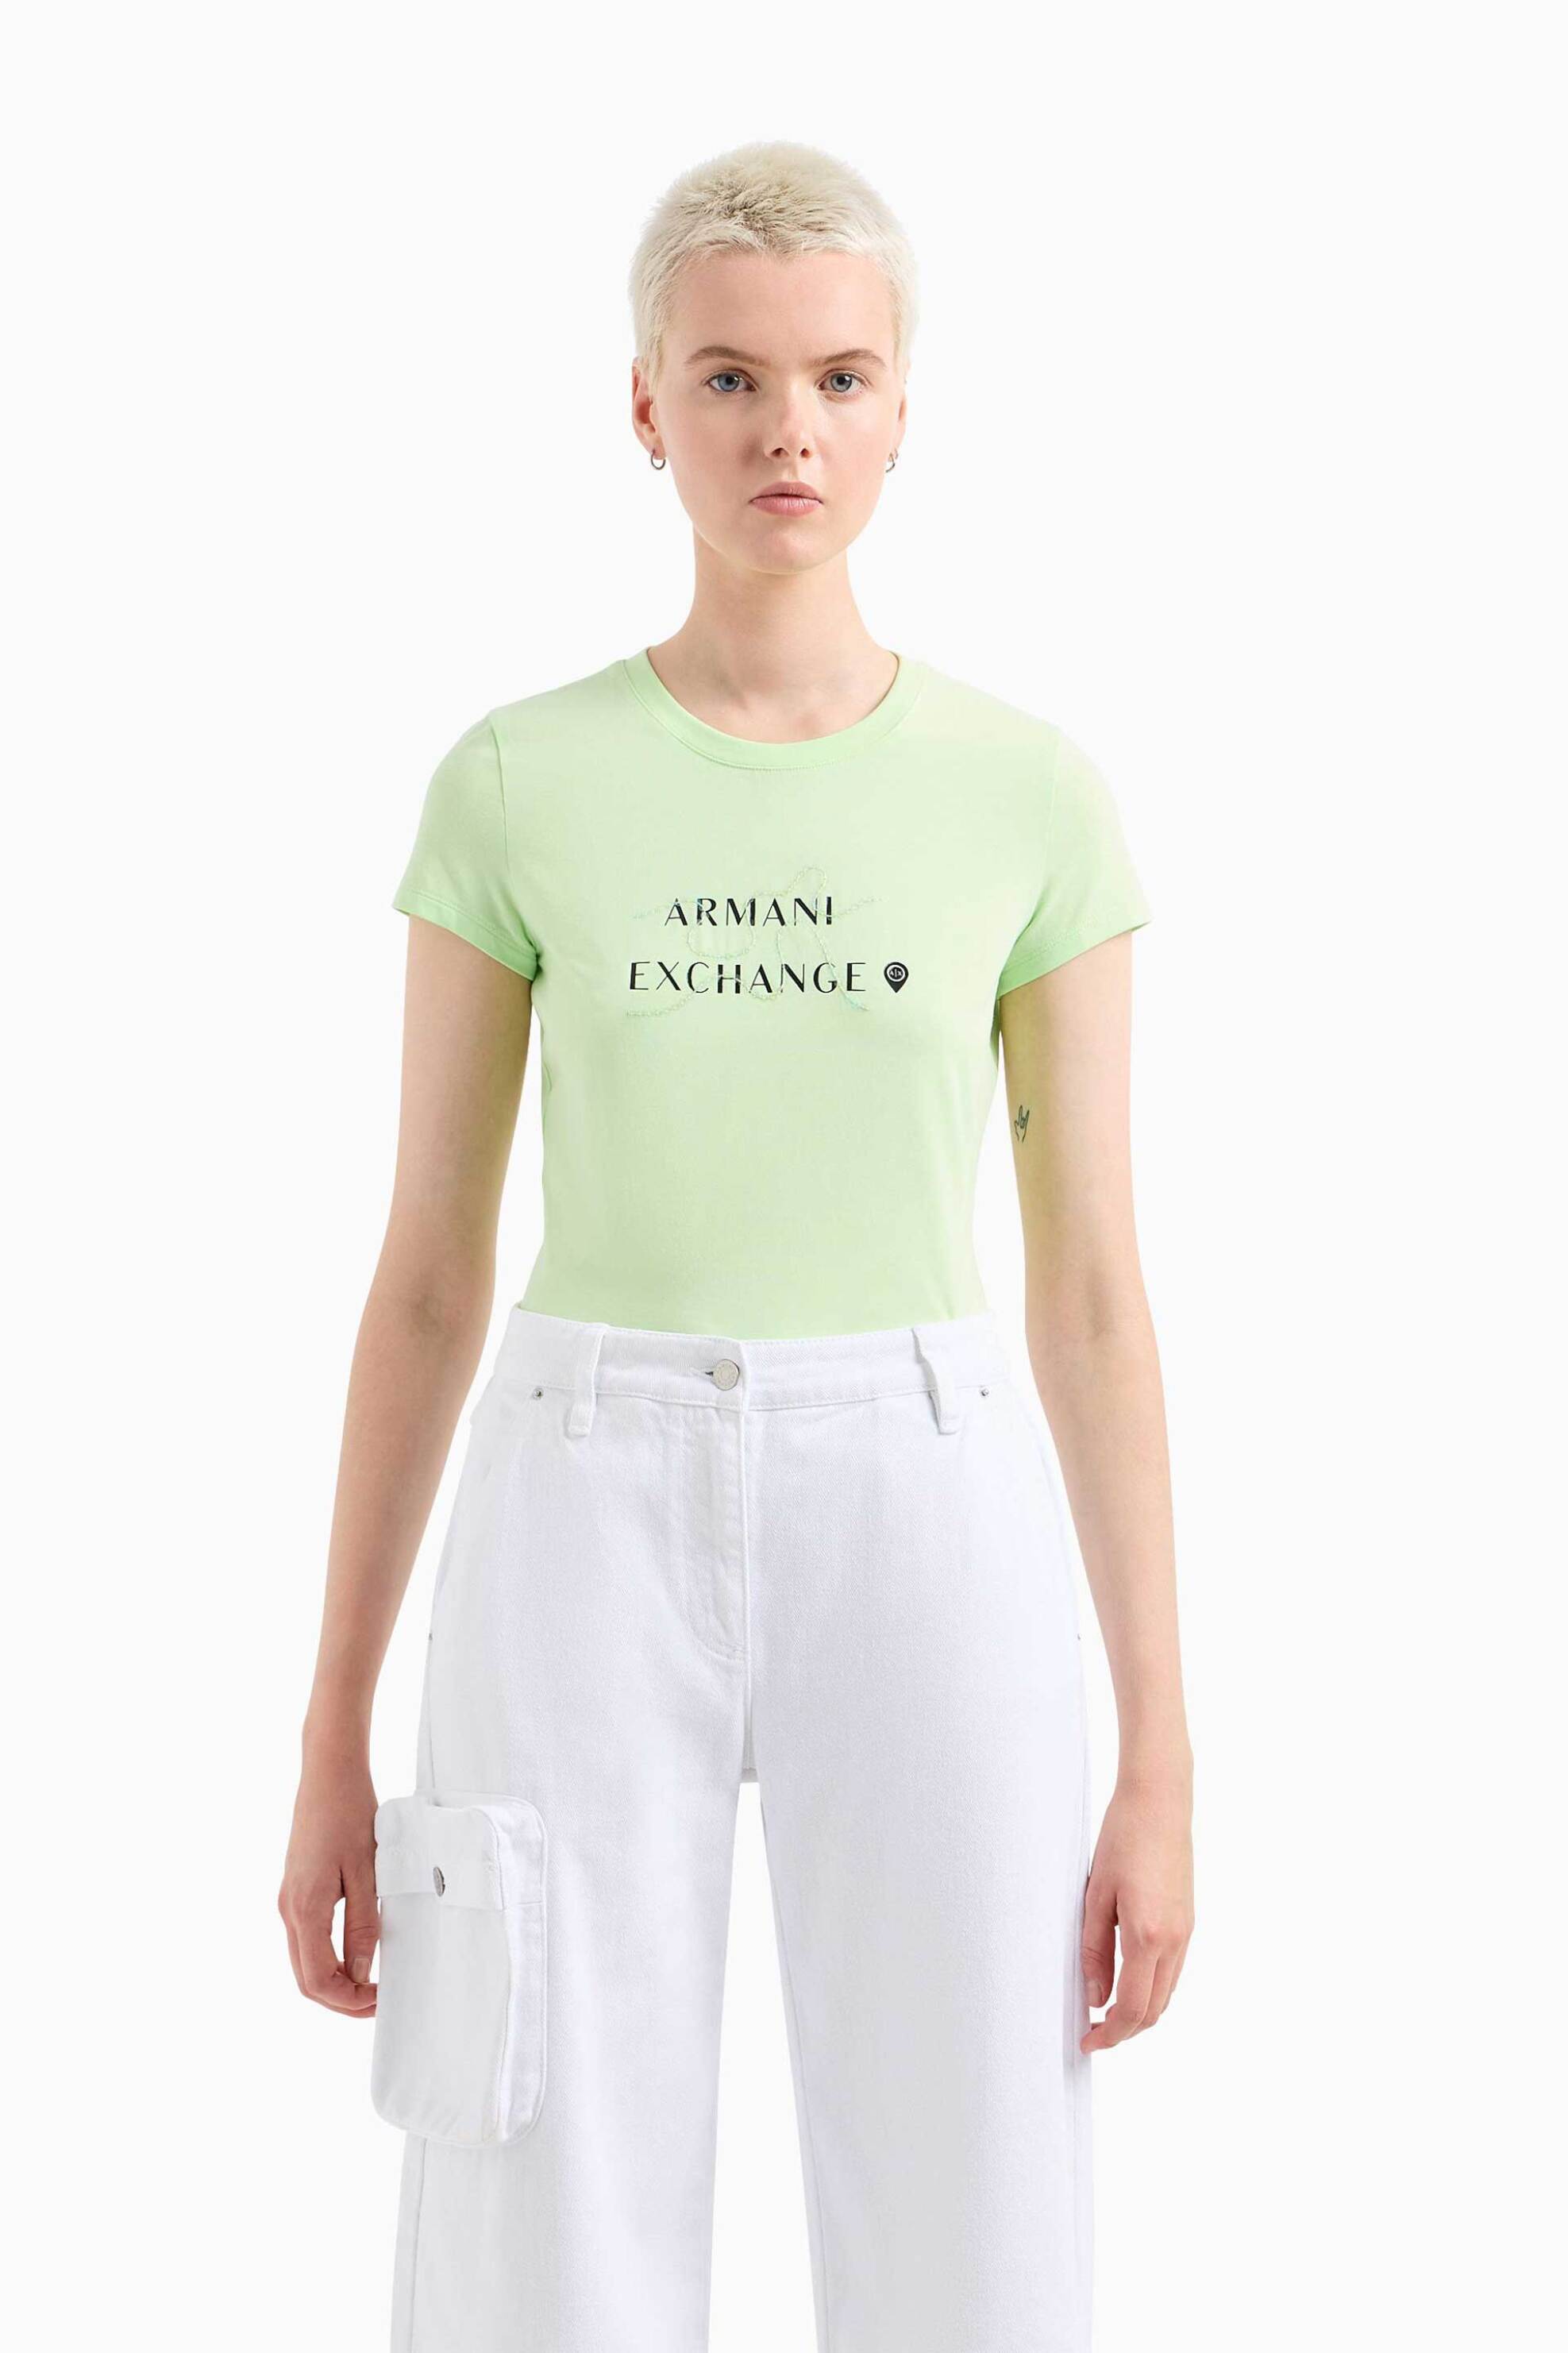 Γυναικεία Ρούχα & Αξεσουάρ > Γυναικεία Ρούχα > Γυναικεία Τοπ > Γυναικεία T-Shirts Armani Exchange γυναικείο T-shirt μονόχρωμο με contrast logo print και ανάγλυφη λεπτομέρεια - 3DYT18YJETZ Πράσινο Ανοιχτό